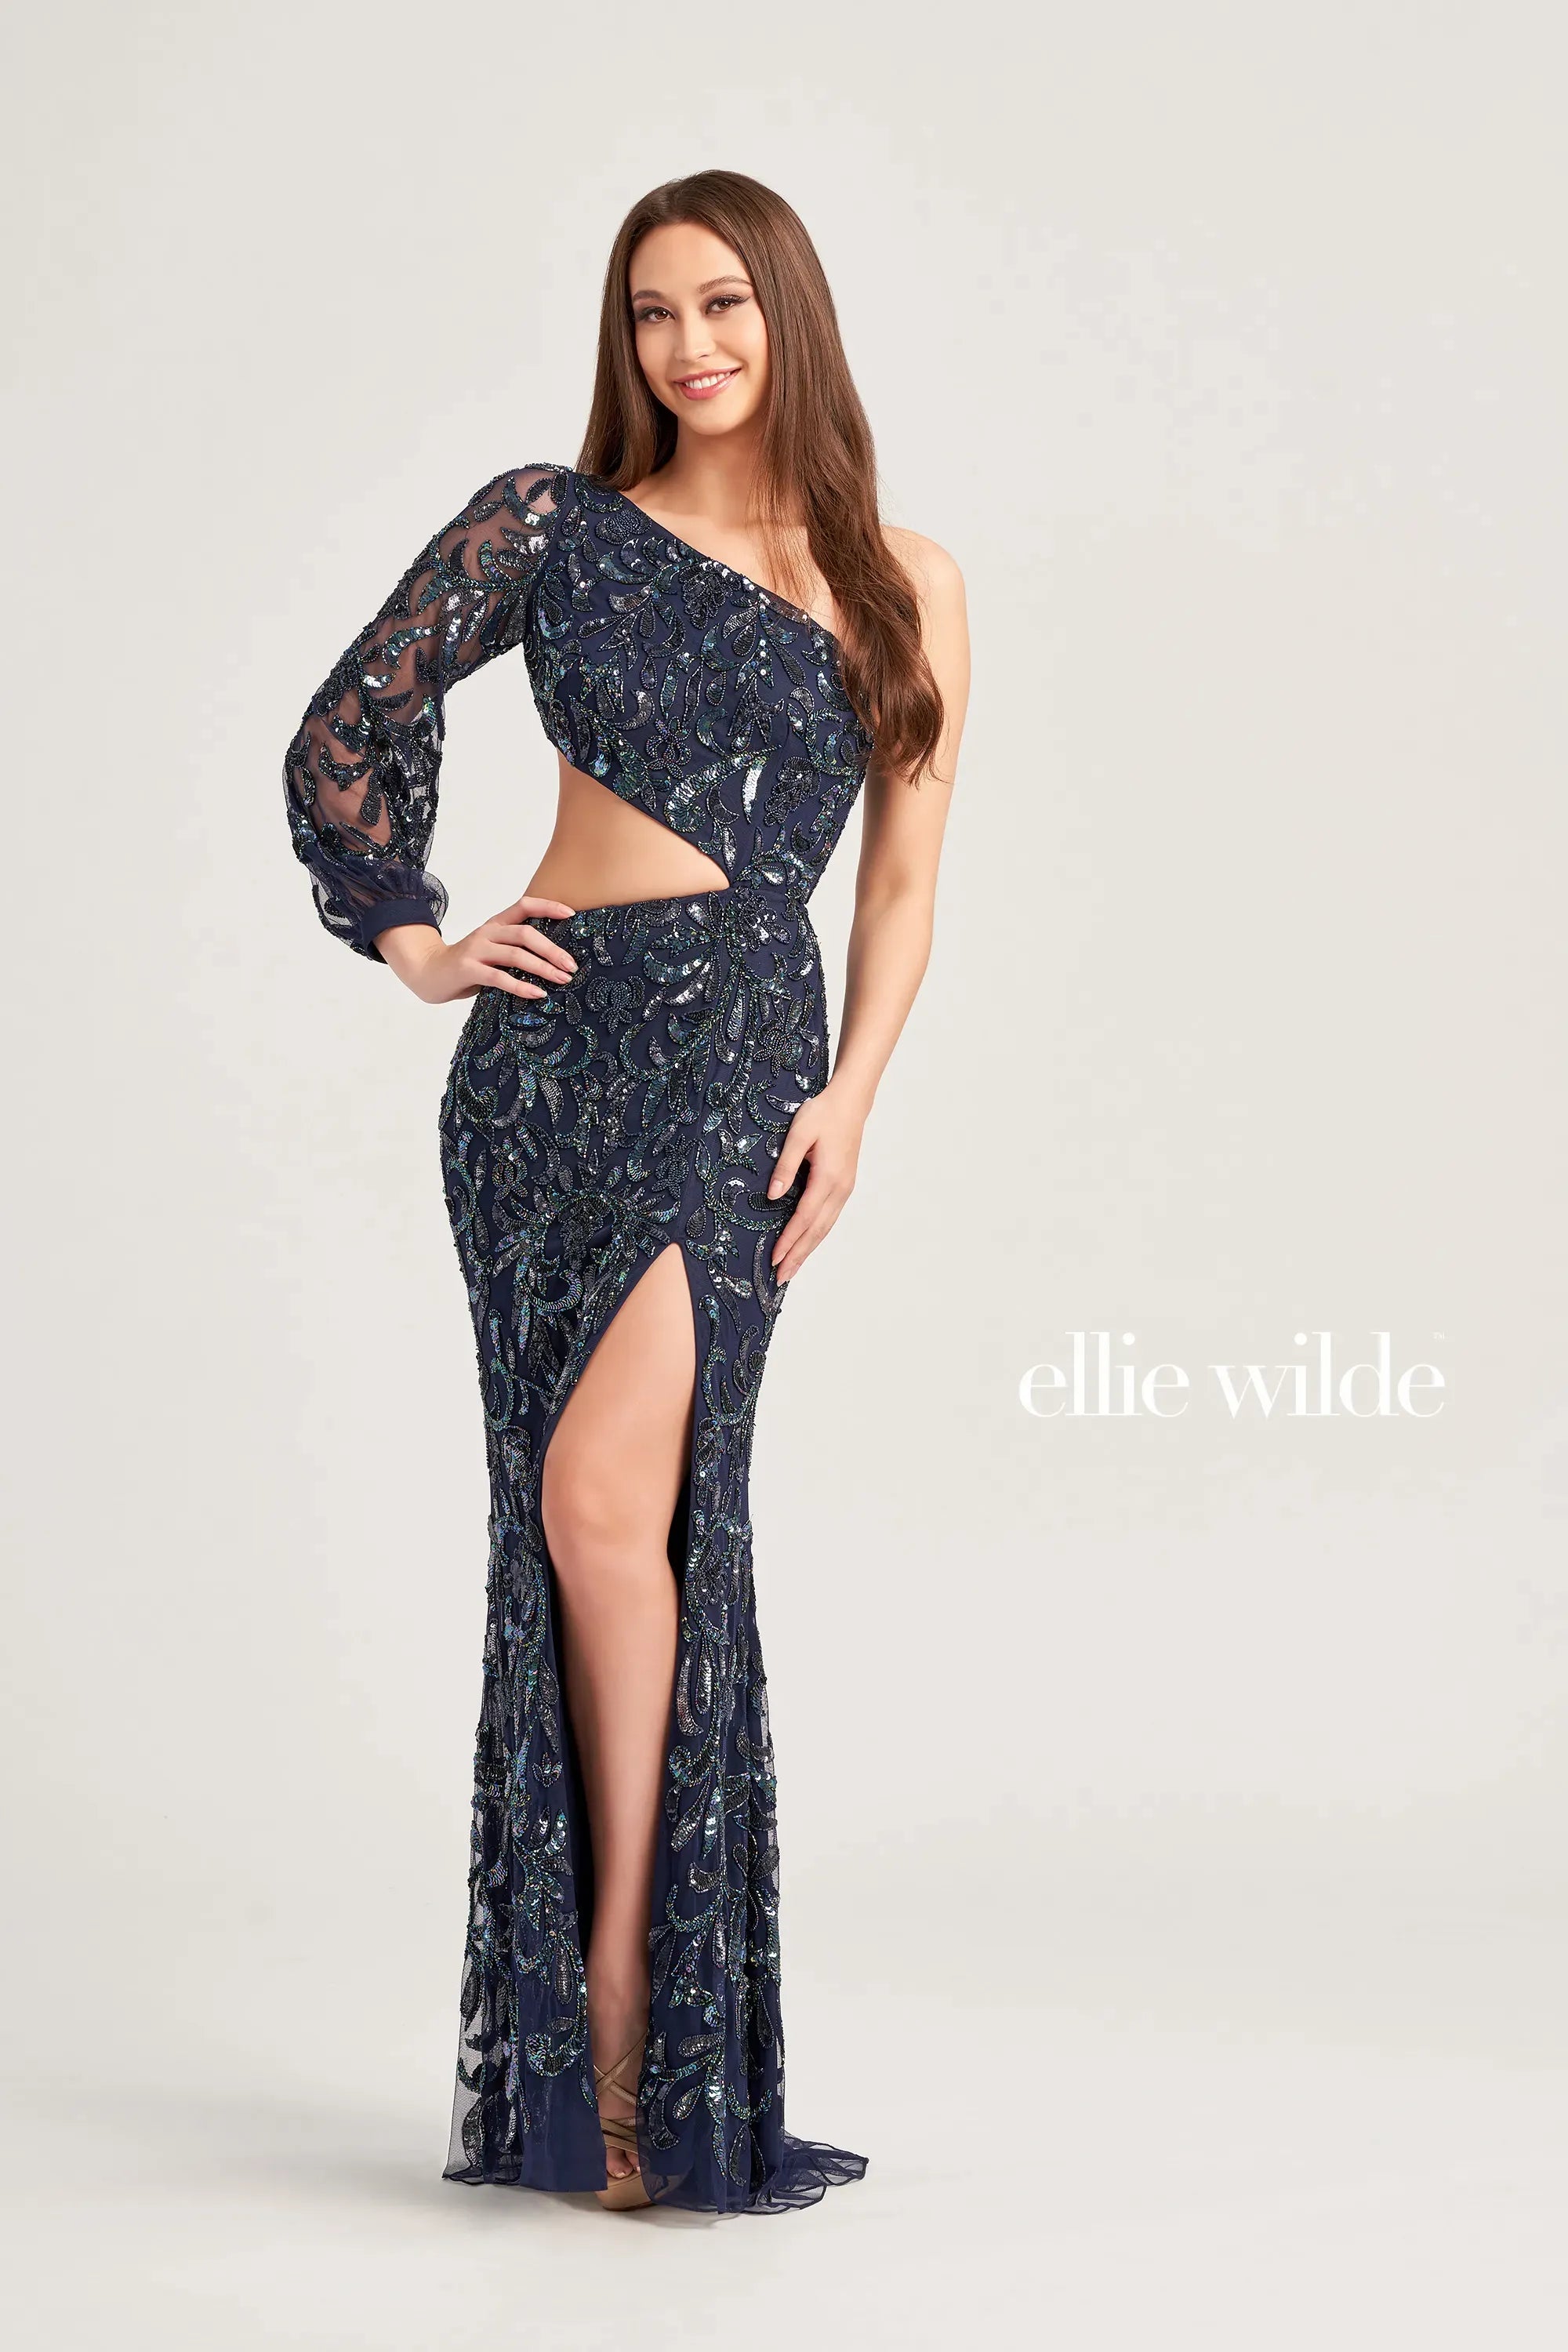 Ellie WildeEW35020